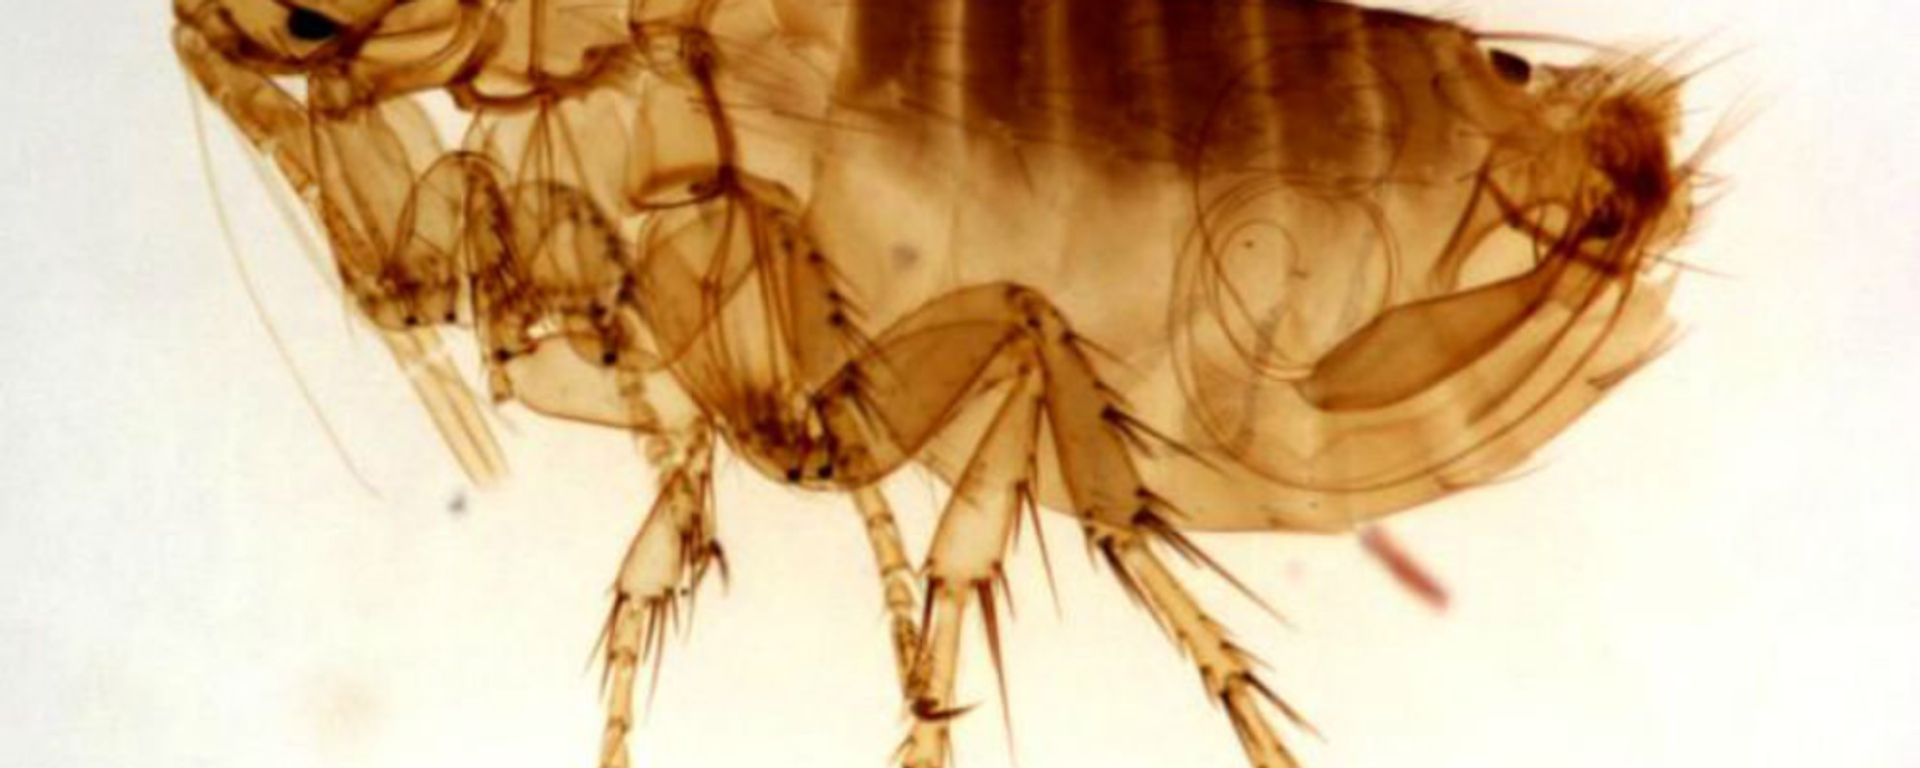 Una pulga, foto de archivo - Sputnik Mundo, 1920, 21.12.2020